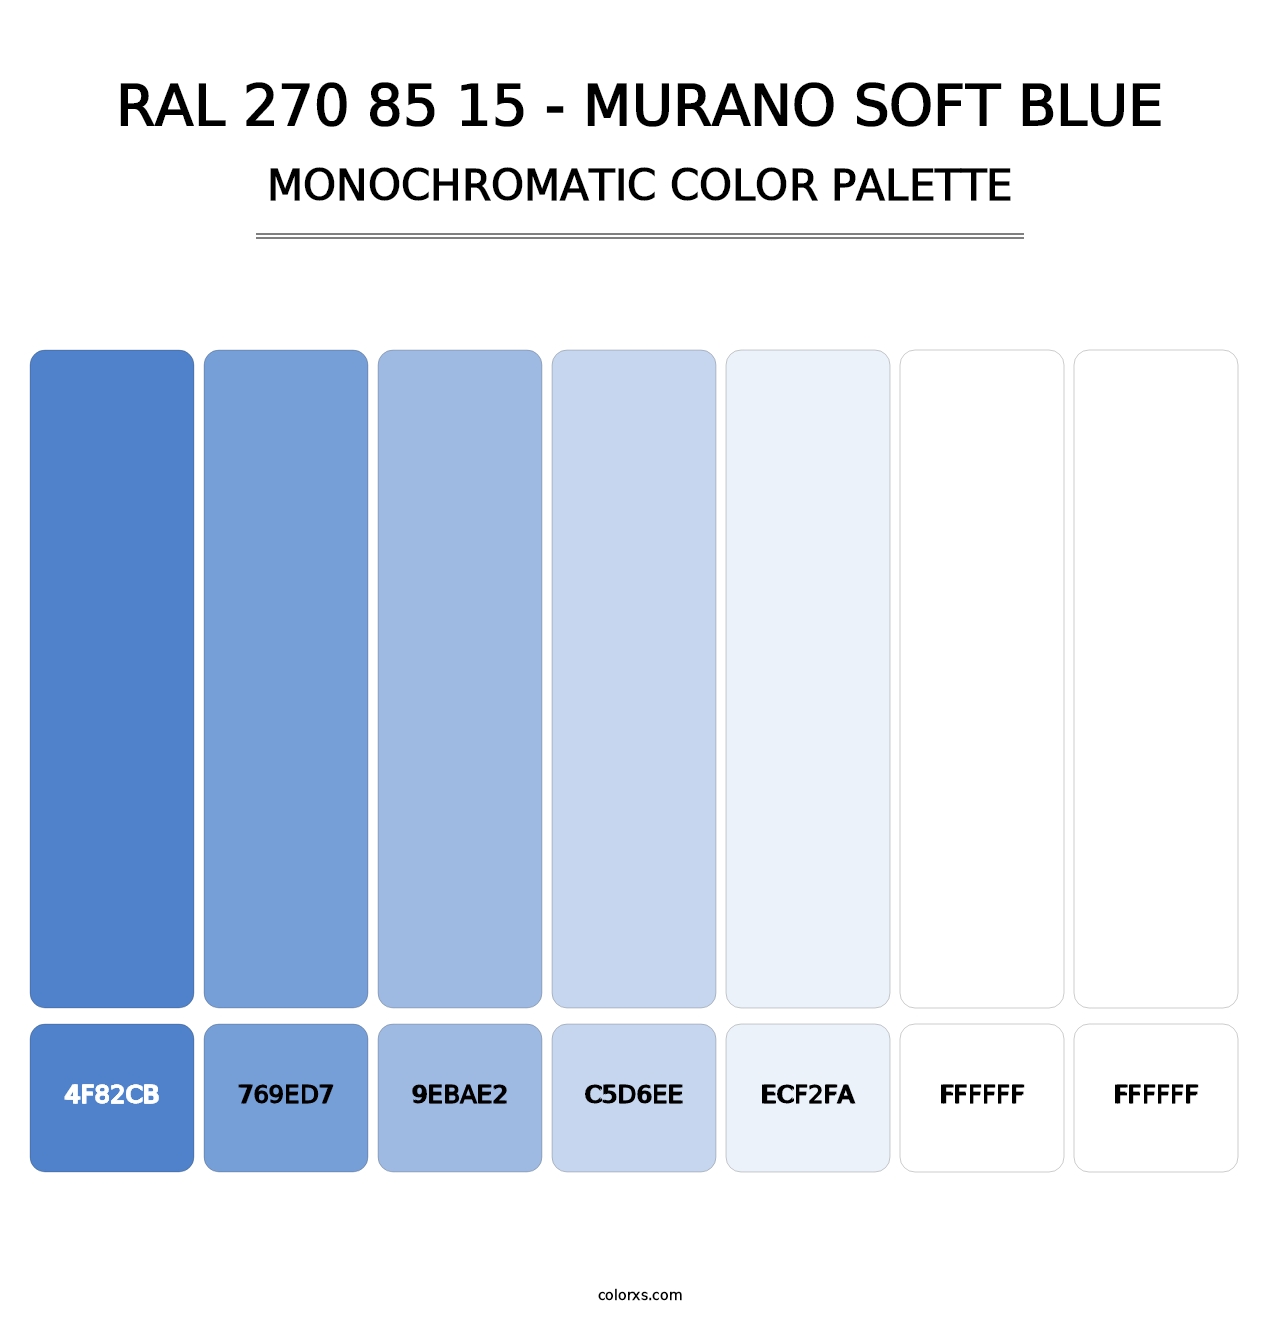 RAL 270 85 15 - Murano Soft Blue - Monochromatic Color Palette